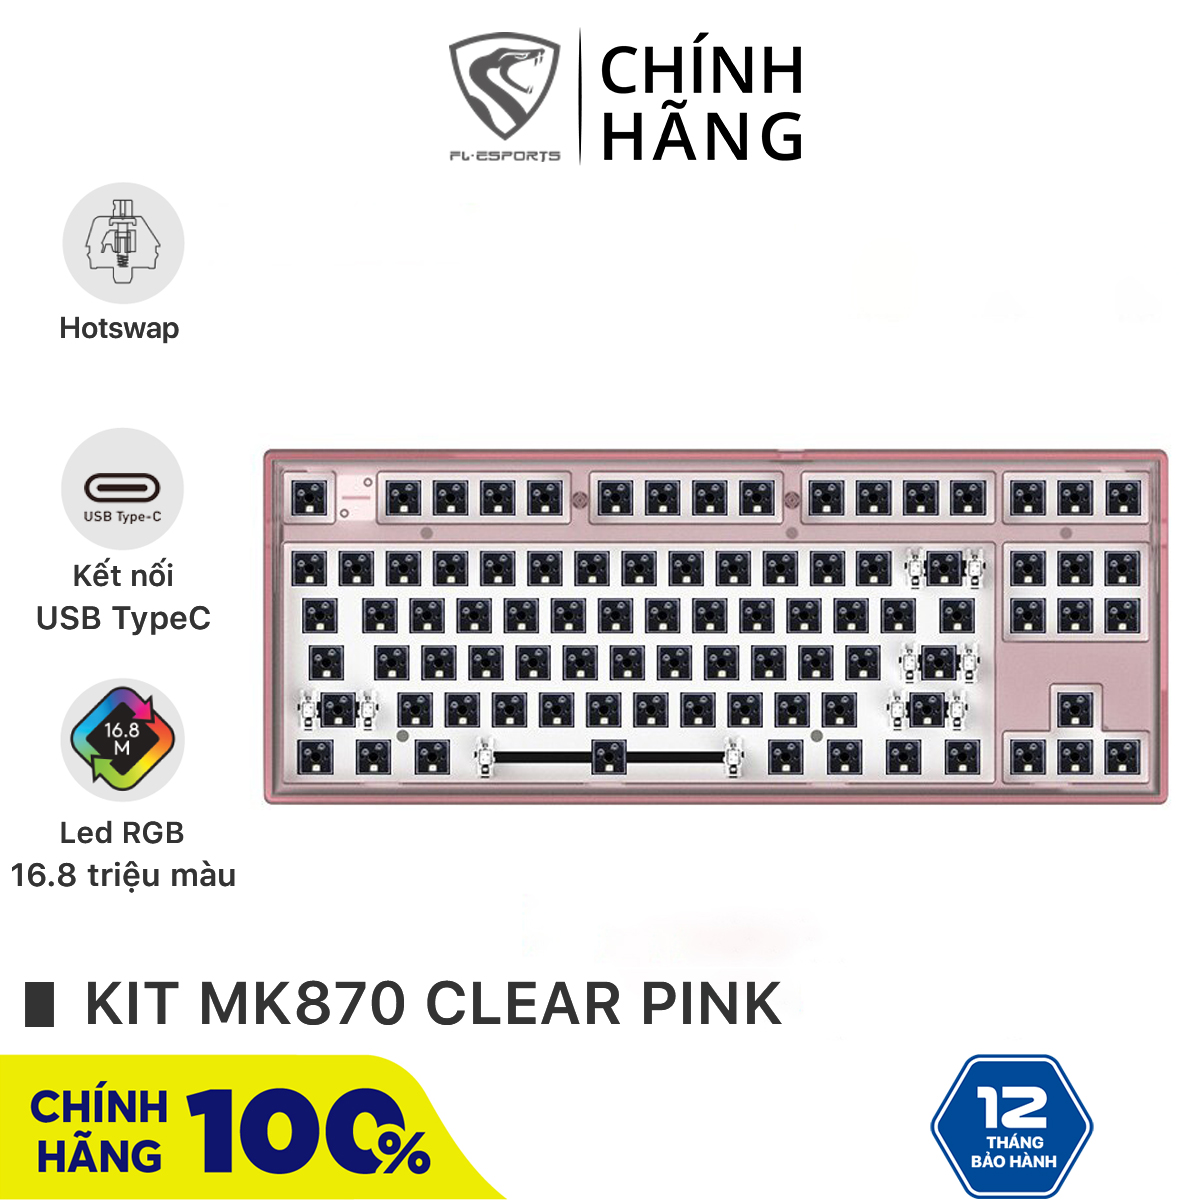 Bộ kit bàn phím cơ FL-Esports MK870 1 Mode Clear Pink - Hotswap - Led RGB - Sẵn foam - Bảo hành 12 tháng